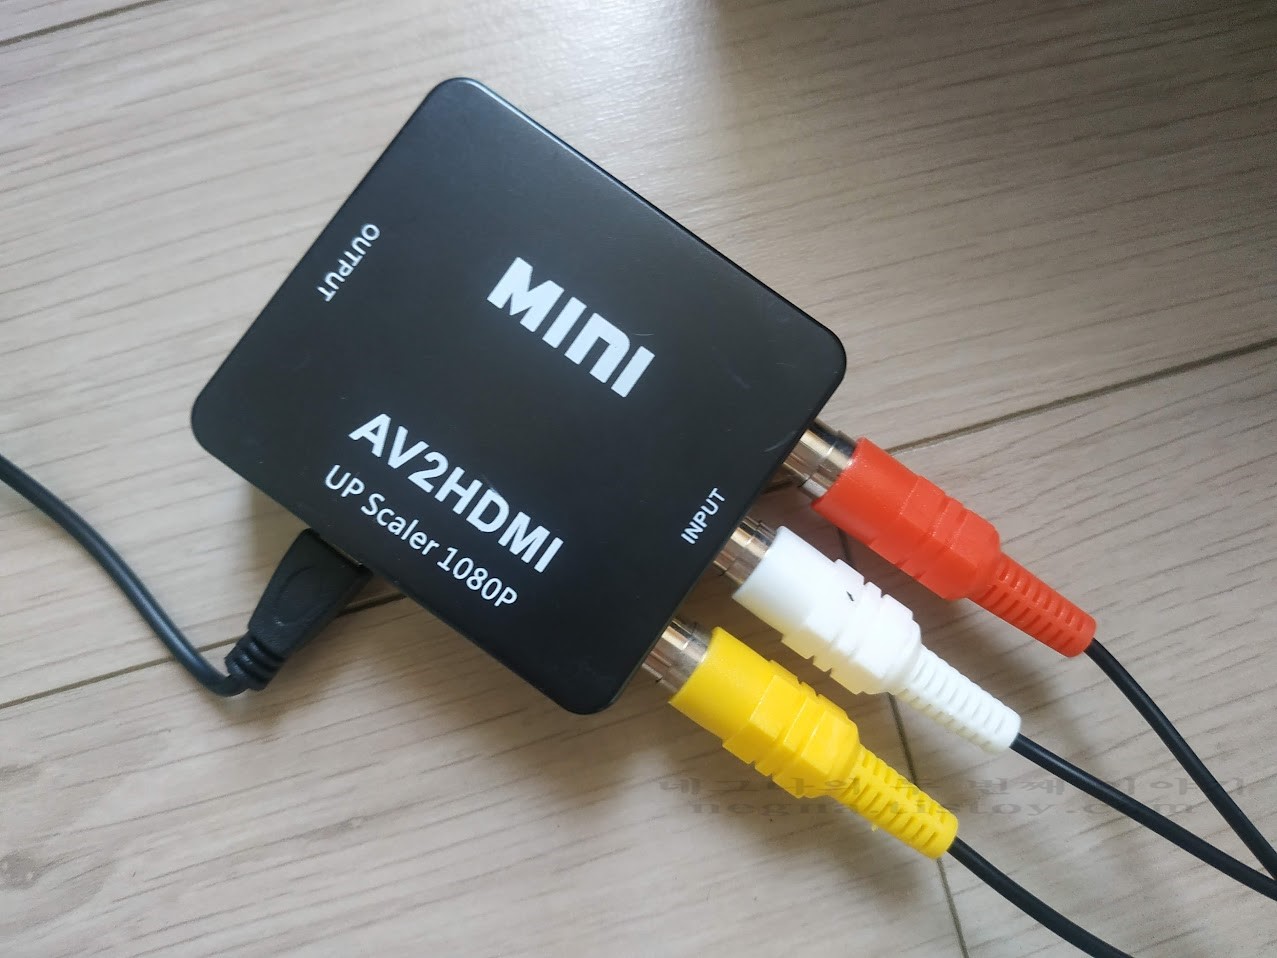 AV2HDMI에 AV멀티 단자 체결한 모습.